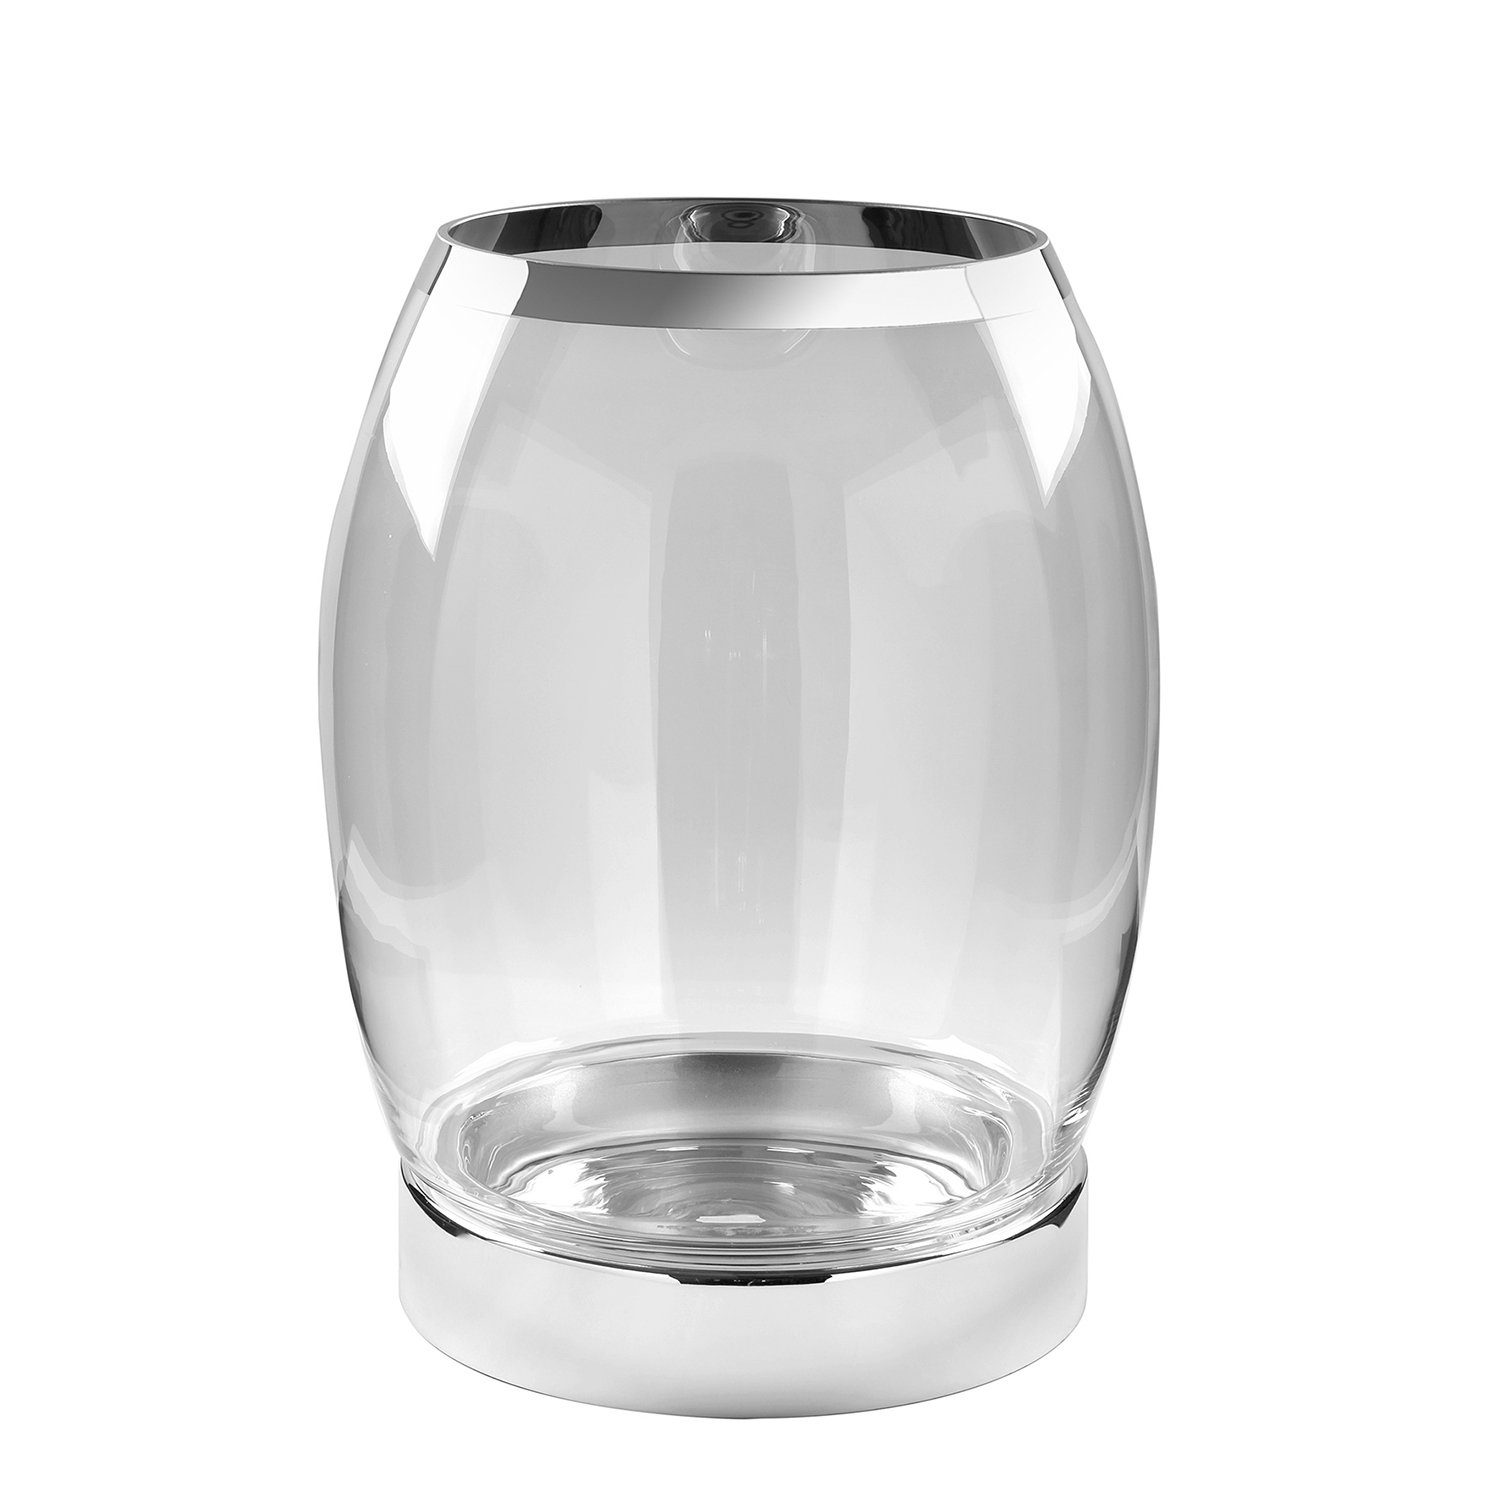 Fink Windlicht Windlicht YORK - silberfarben - Eisen / Glas - H.39cm x Ø 31cm (Eisenbasis mit Glaseinsatz), vernickelt - inklusive Glas mit Platinumauflage